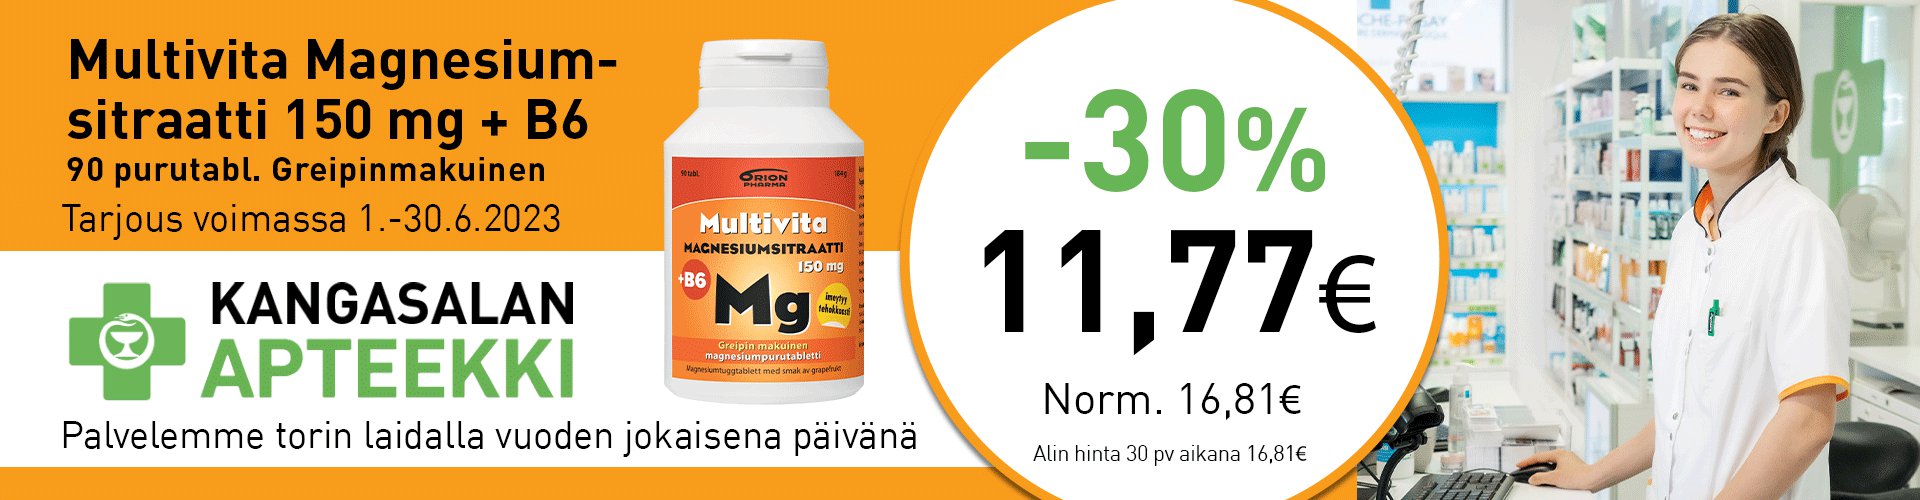 Kesäkuun etuna Multivita Magnesiumsitraatti 1510 mg +B6 90 purutabl. -30%